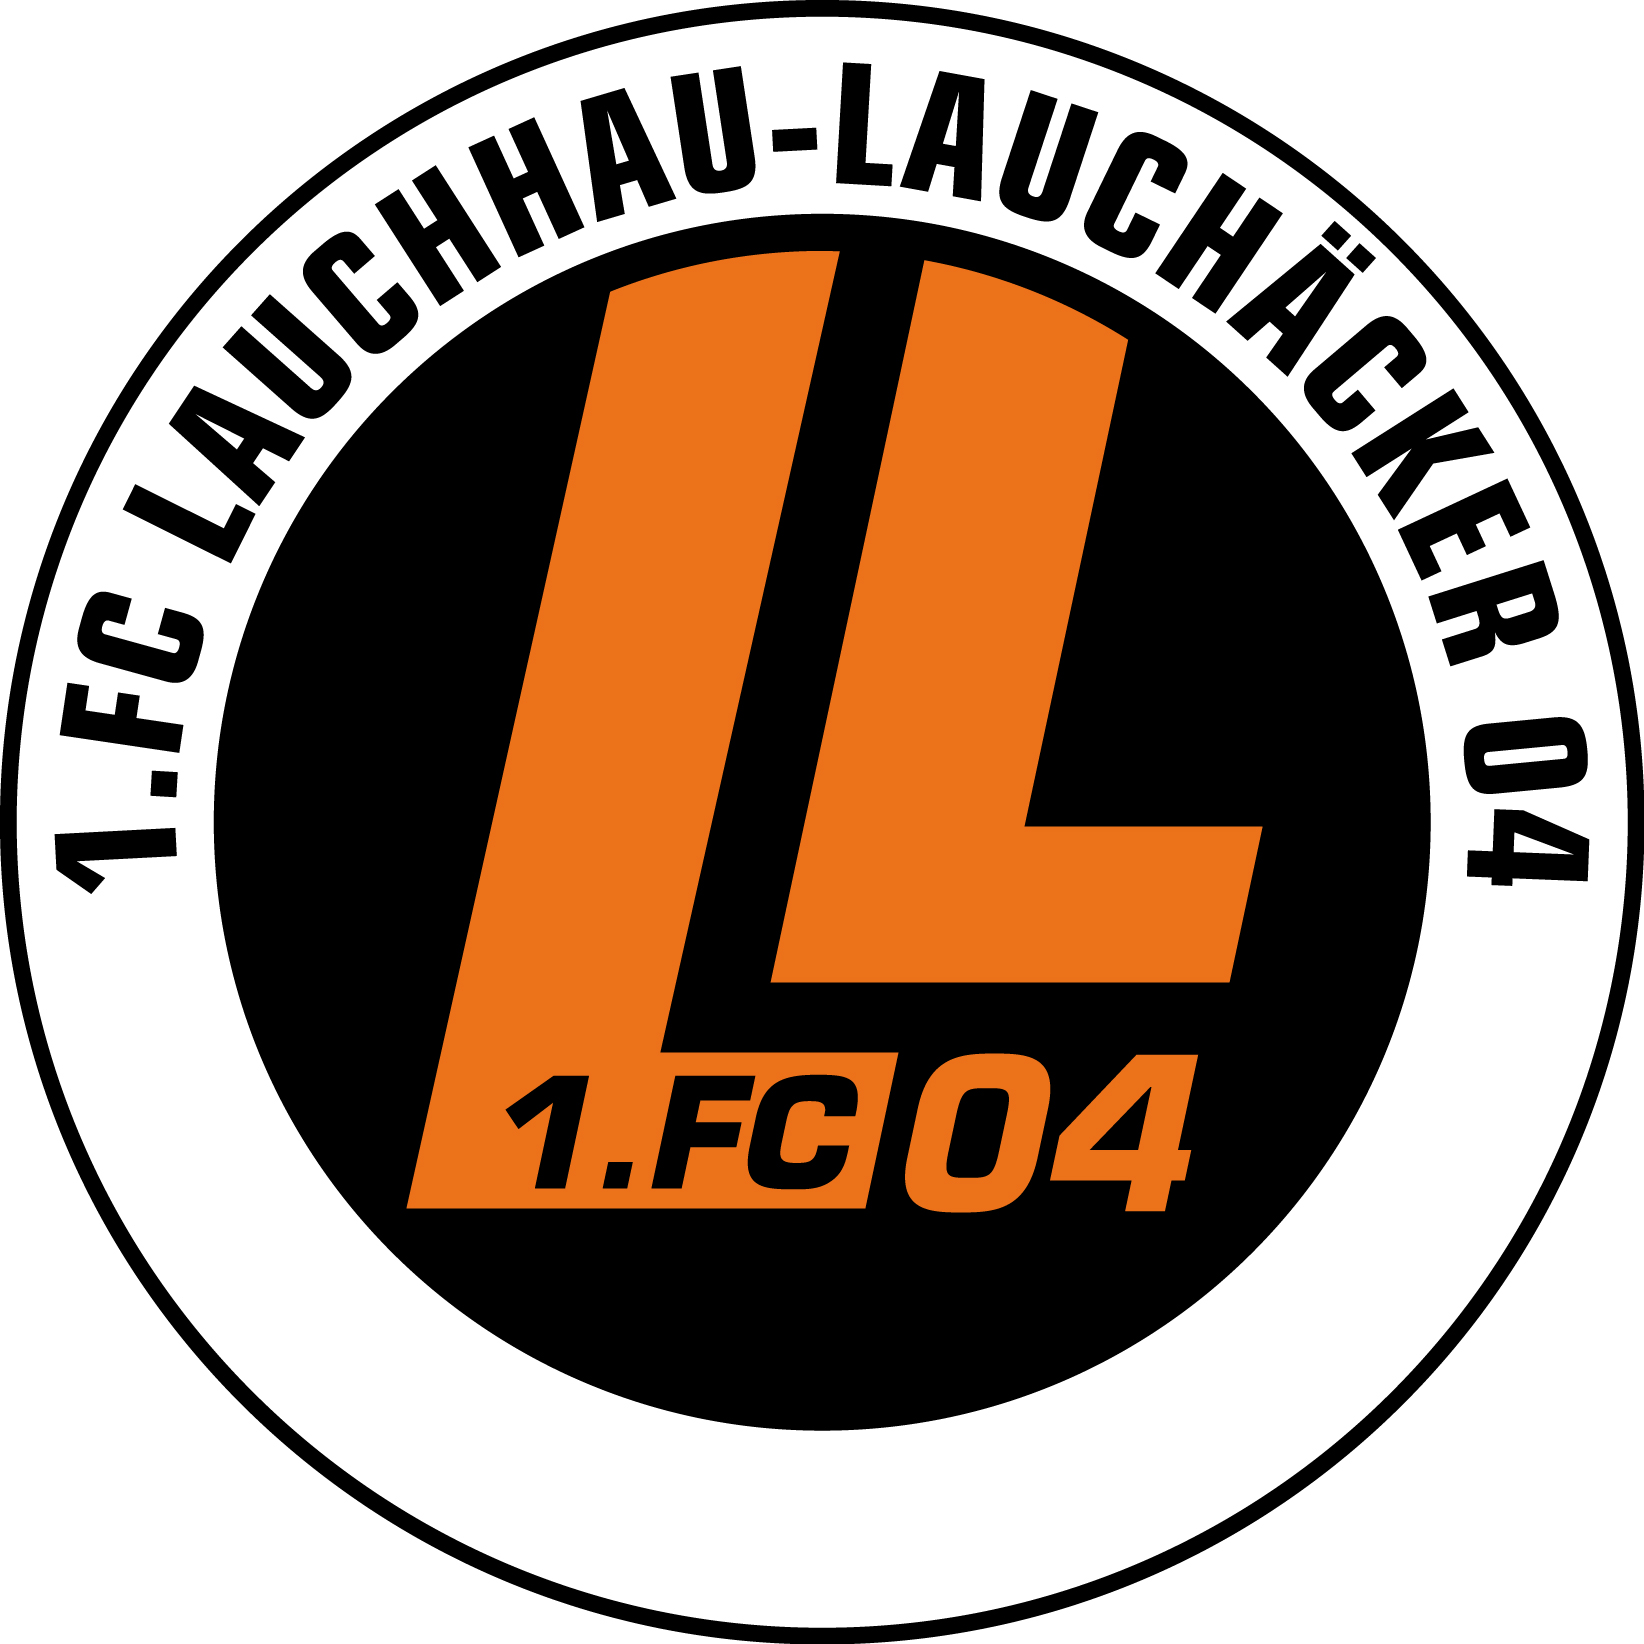 Lauchhau Logo